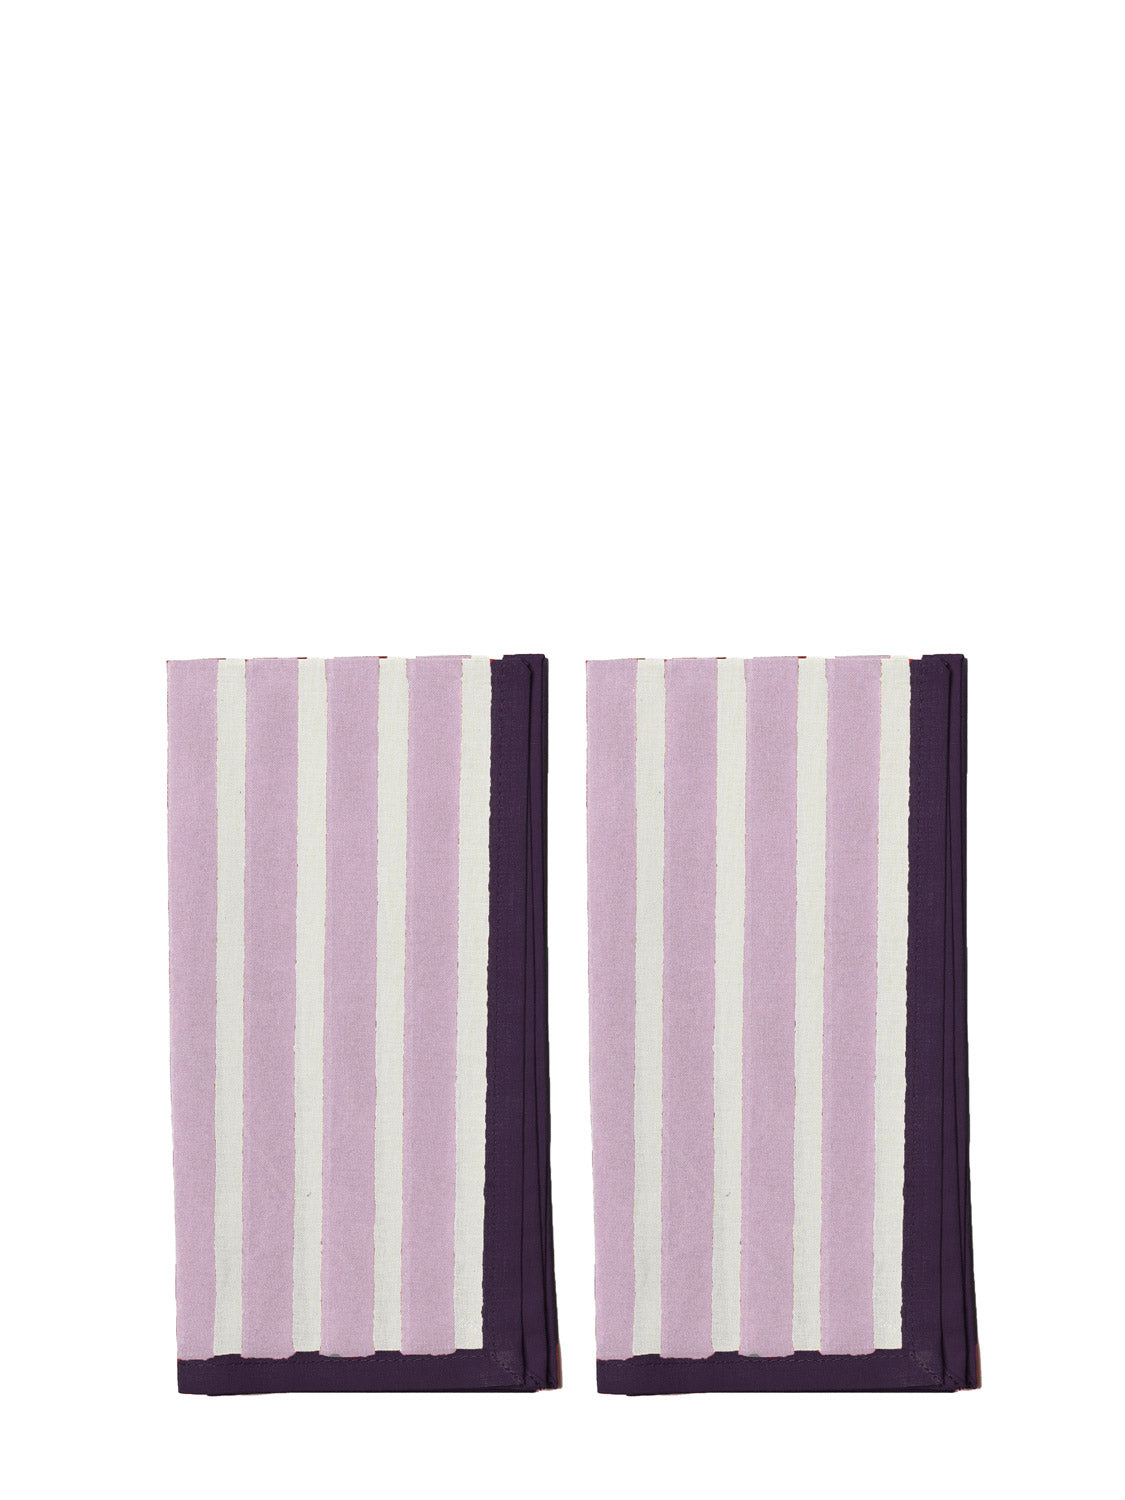 lilac white purple cotton napkin set of 2 by Yod & Co